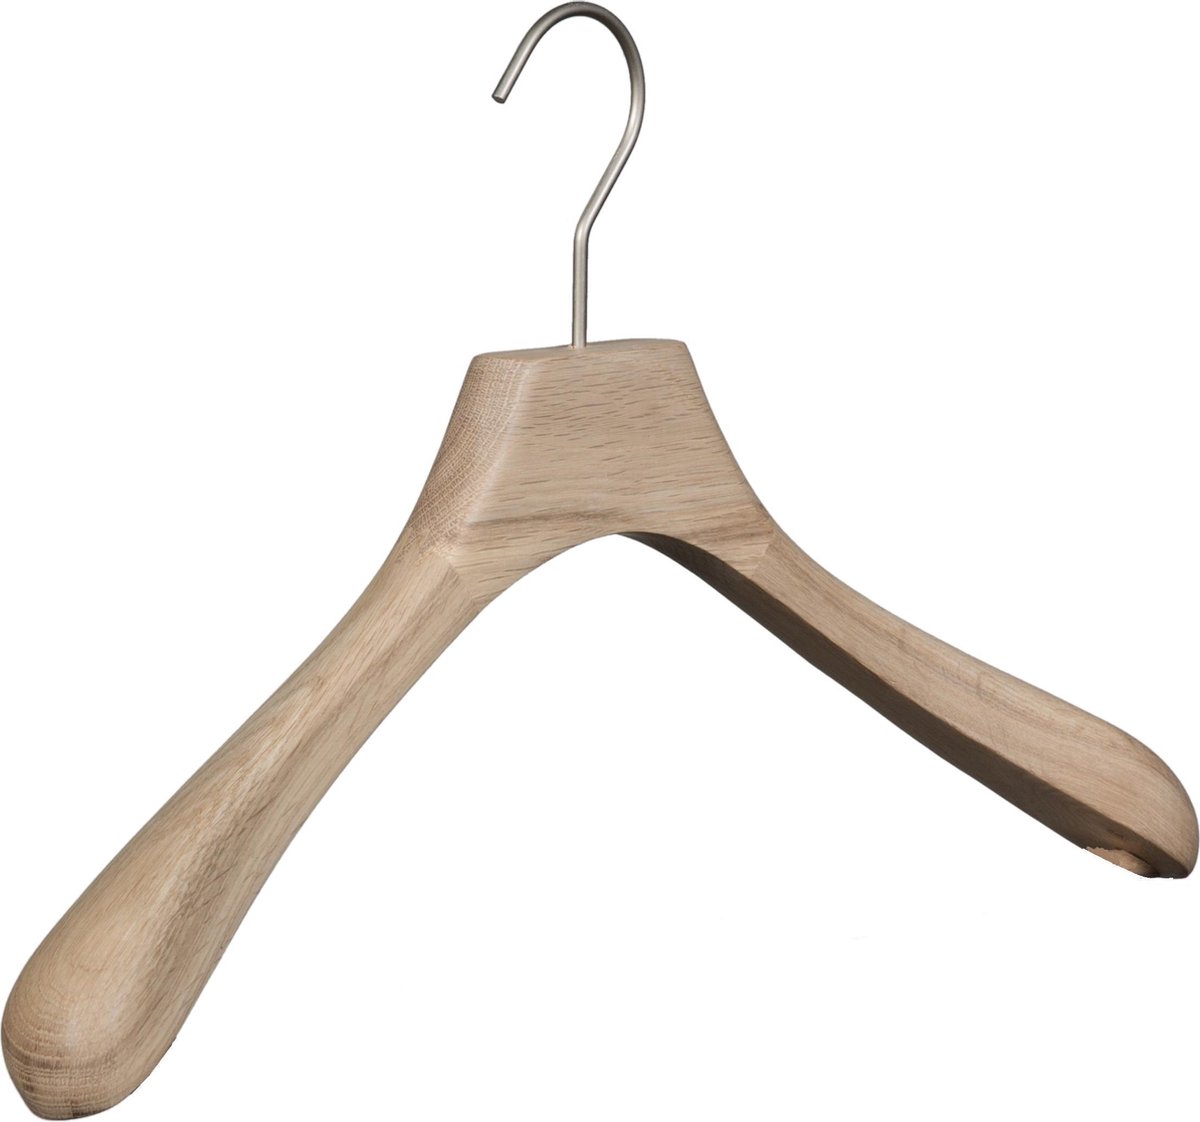 [Set van 10] Luxe handgemaakte kledinghangers / garderobehanger vervaardigd uit puur en ongelakt eikenhout met brede schouders en een 4mm dikke matzilveren haak